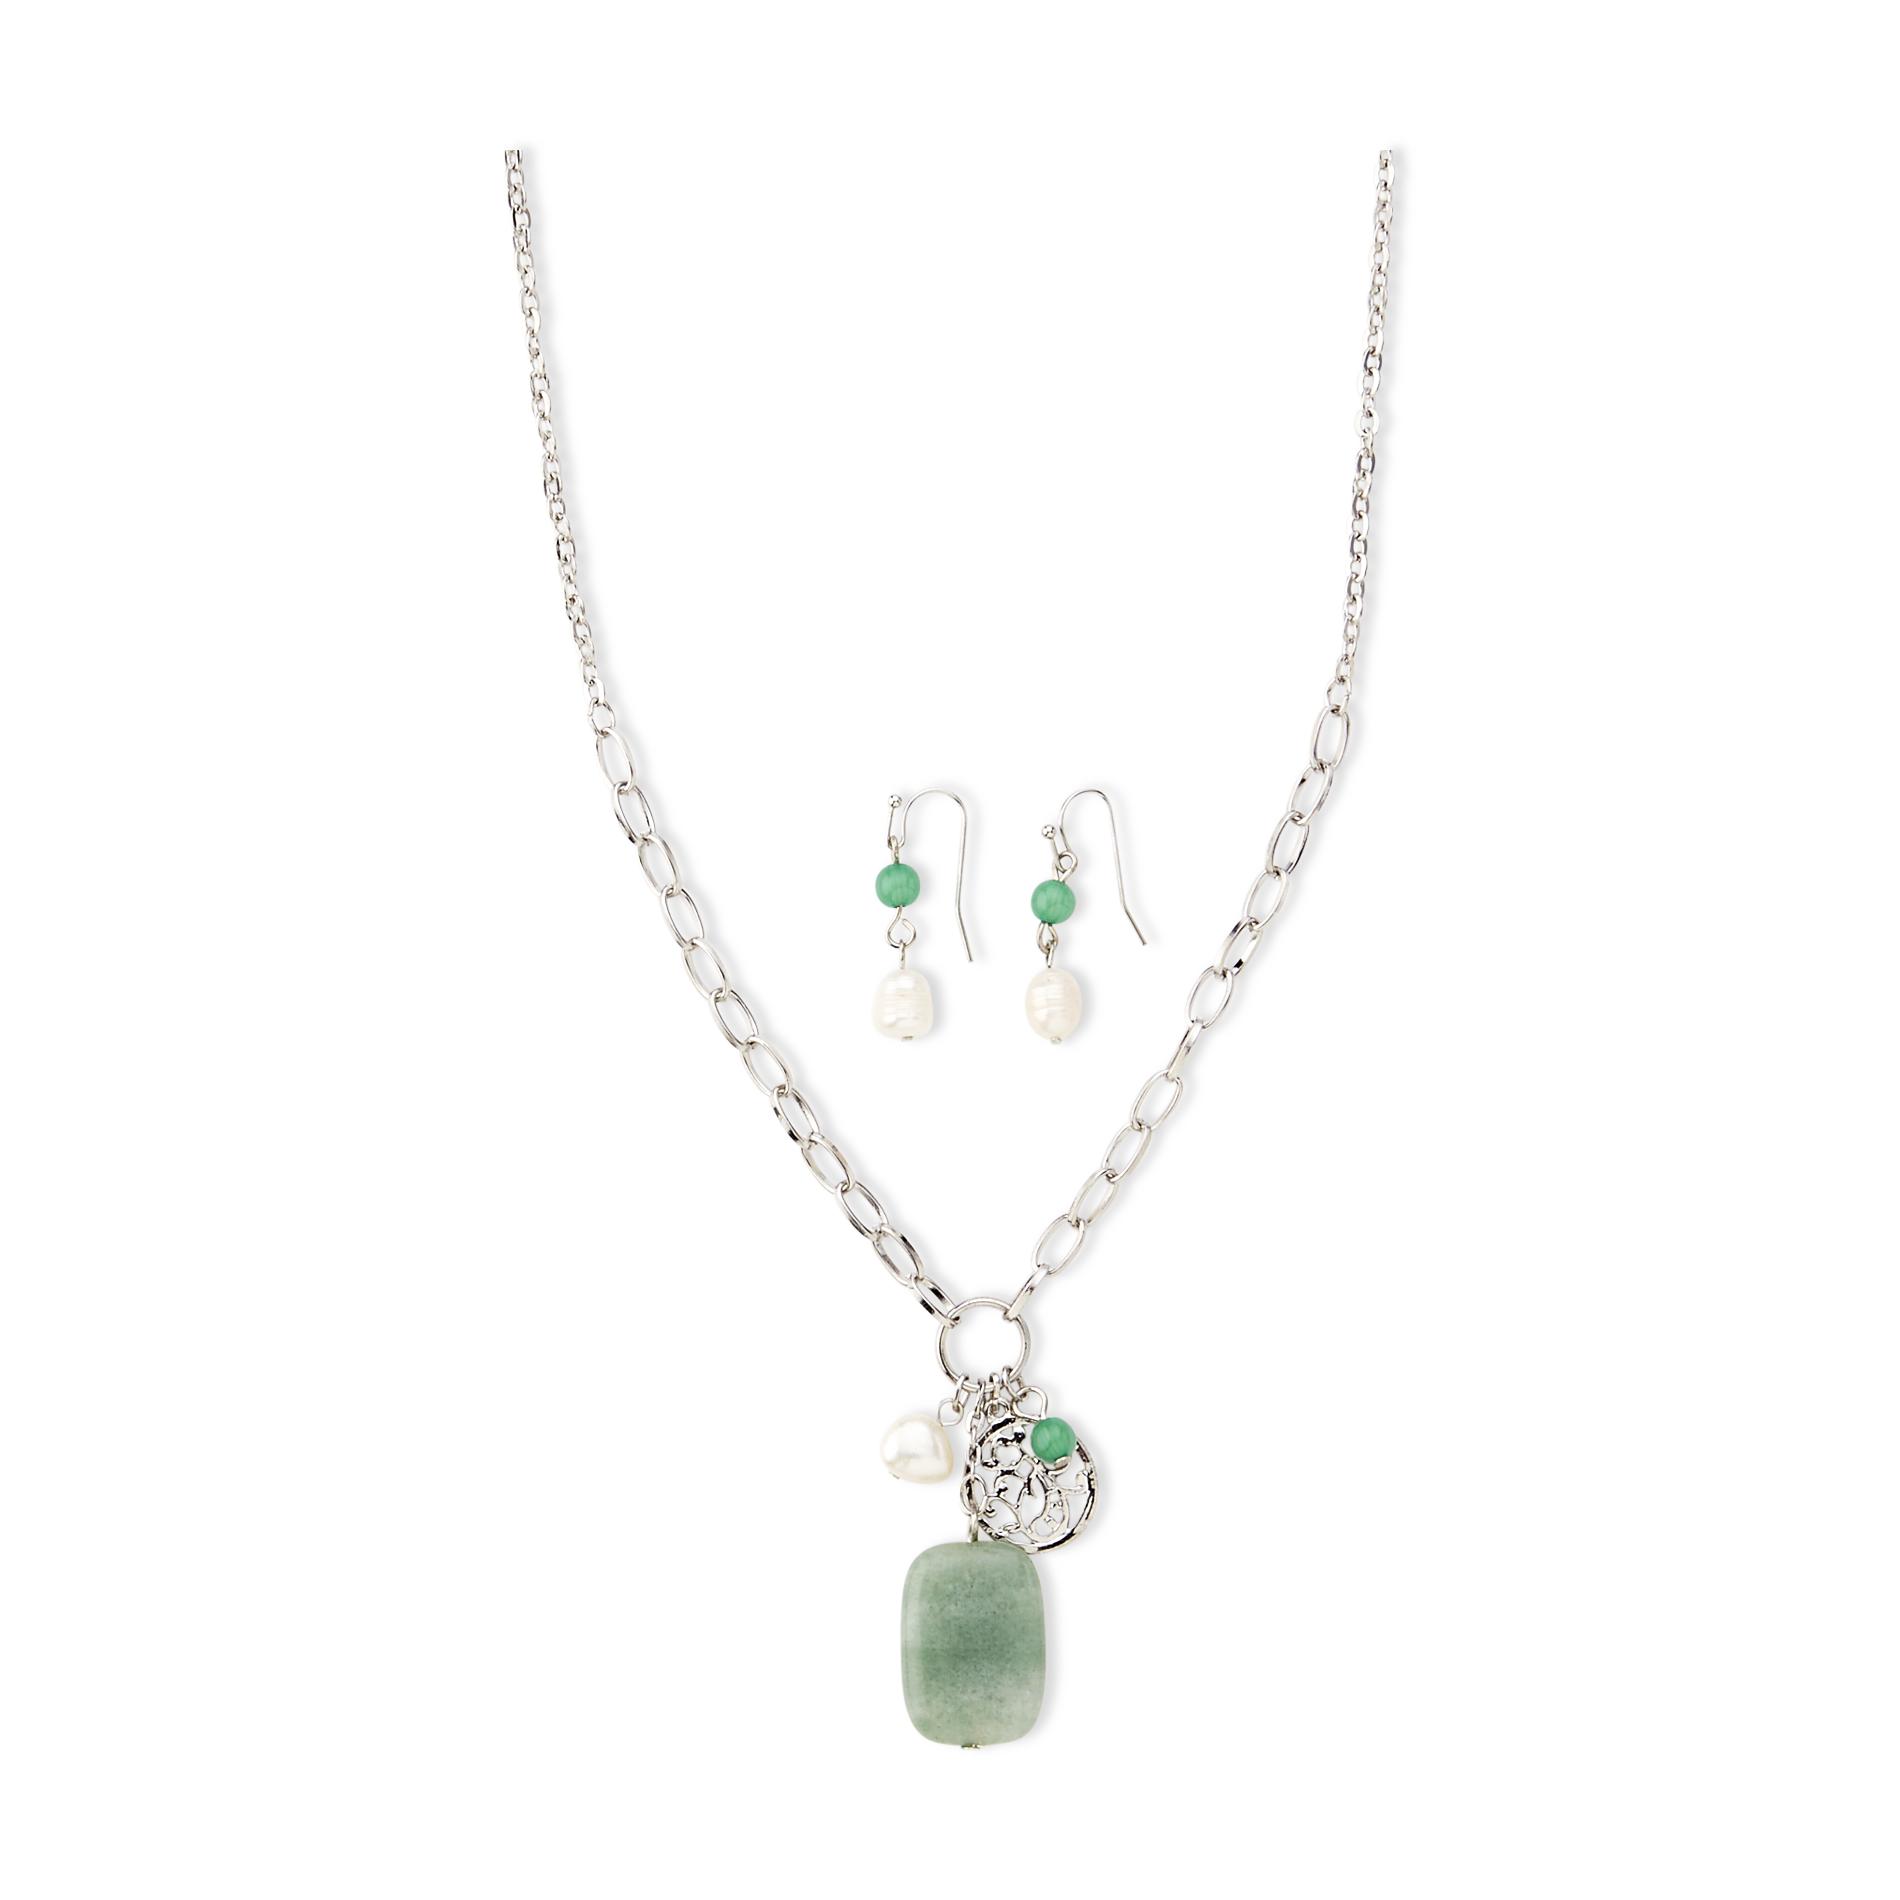 Jaclyn Smith Women's Silvertone Green Quartz Charm Pendant Necklace  Drop Earrings & Gift Box